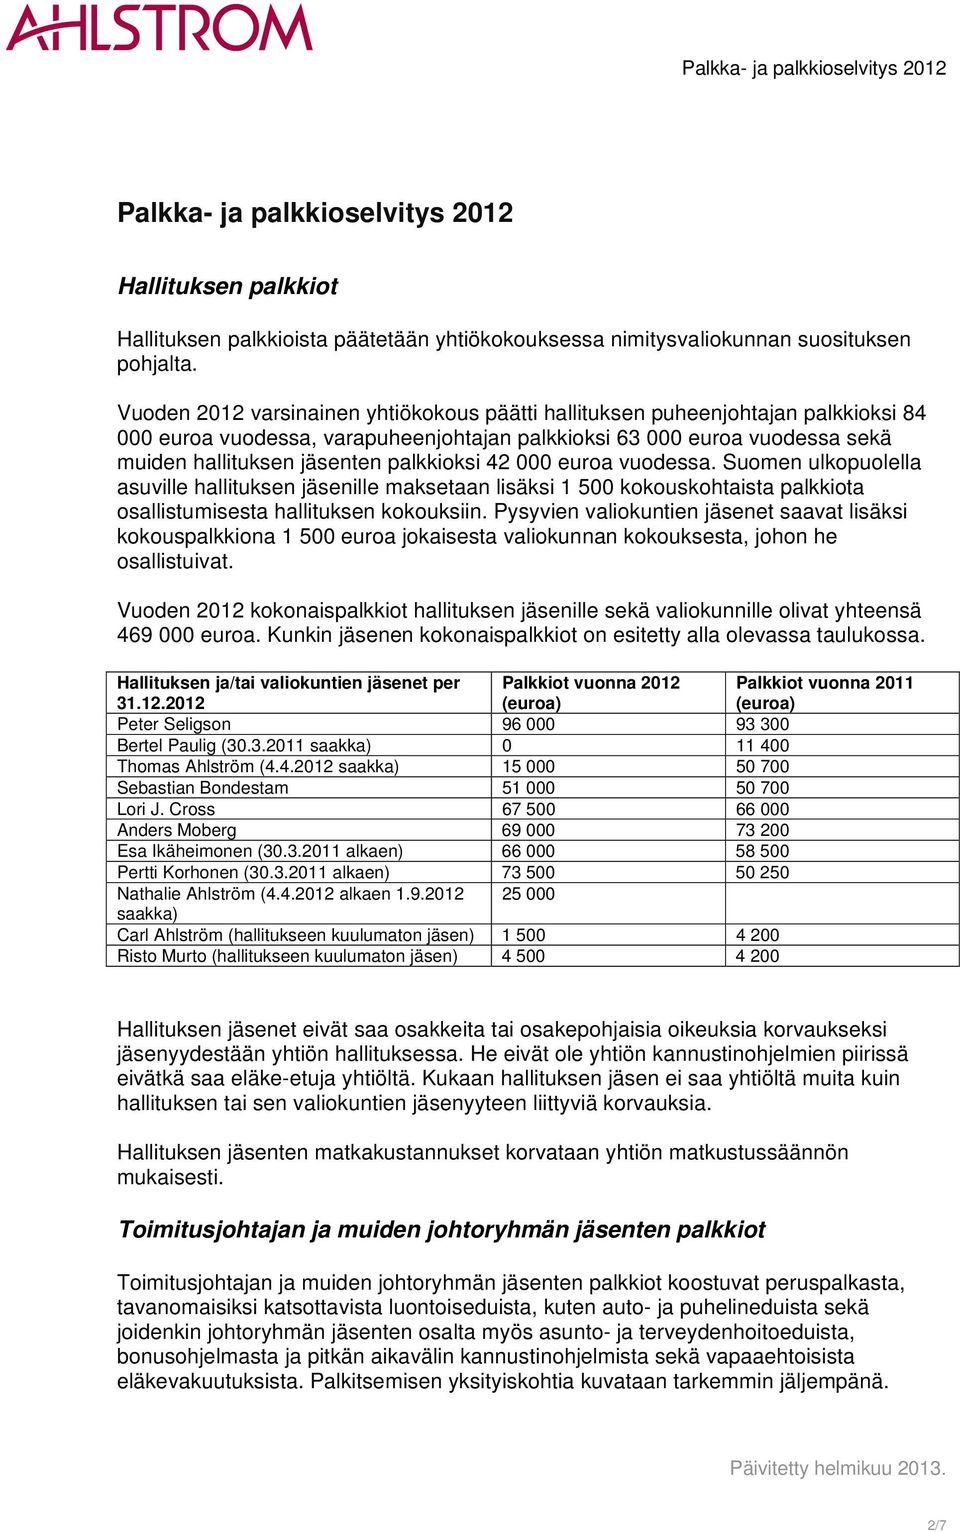 42 000 euroa vuodessa. Suomen ulkopuolella asuville hallituksen jäsenille maksetaan lisäksi 1 500 kokouskohtaista palkkiota osallistumisesta hallituksen kokouksiin.